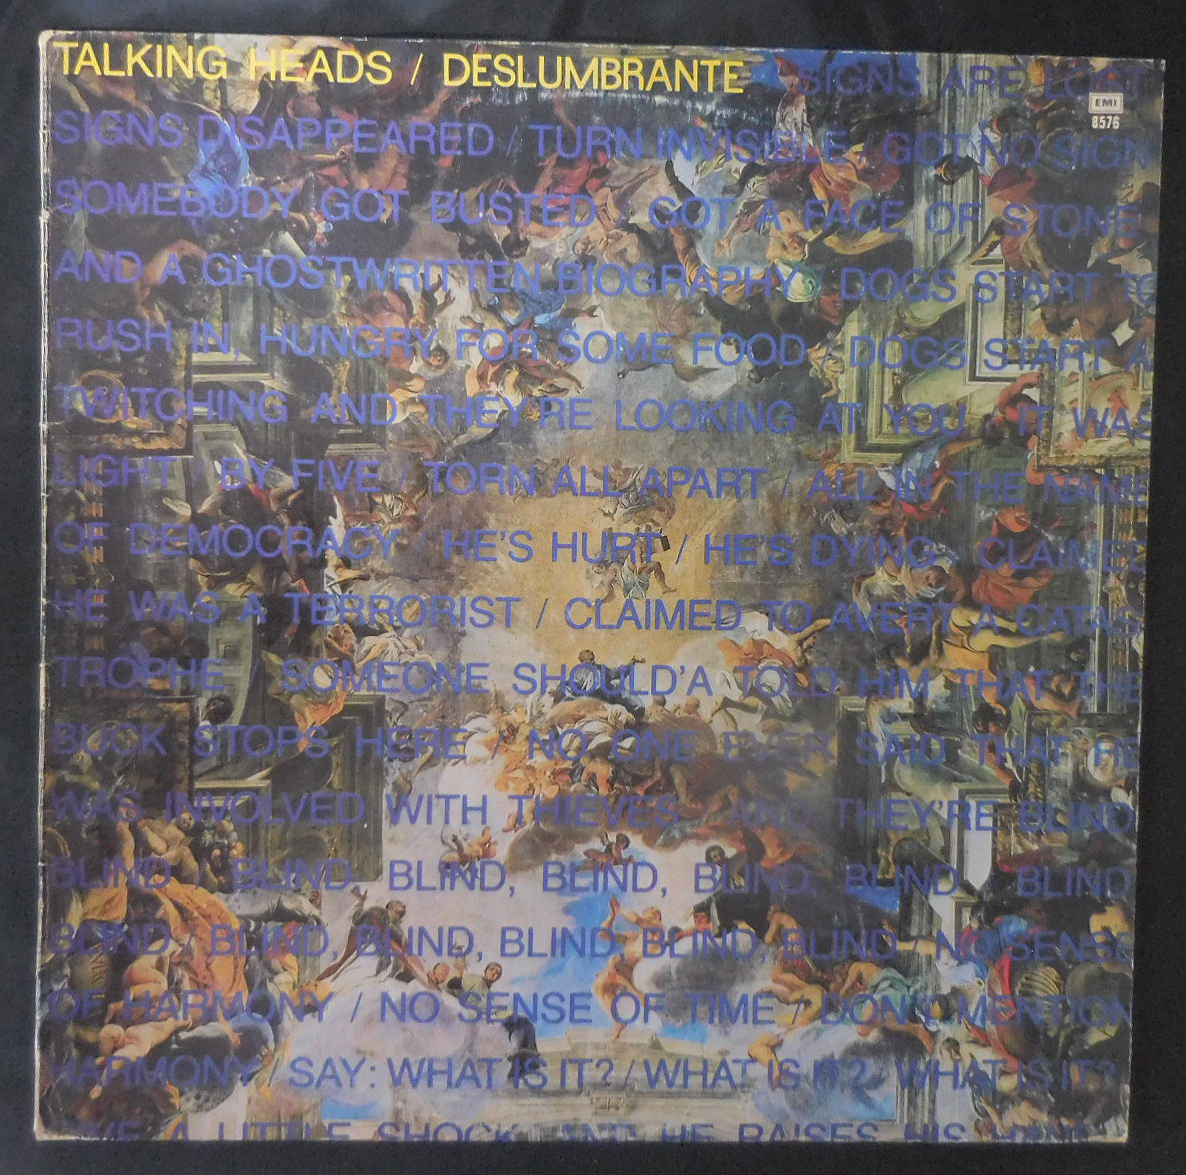 TALKING HEADS /DESLUMBRANTE (BLIND) レア・アルゼンチン盤12インチ スペイン語表記_画像1